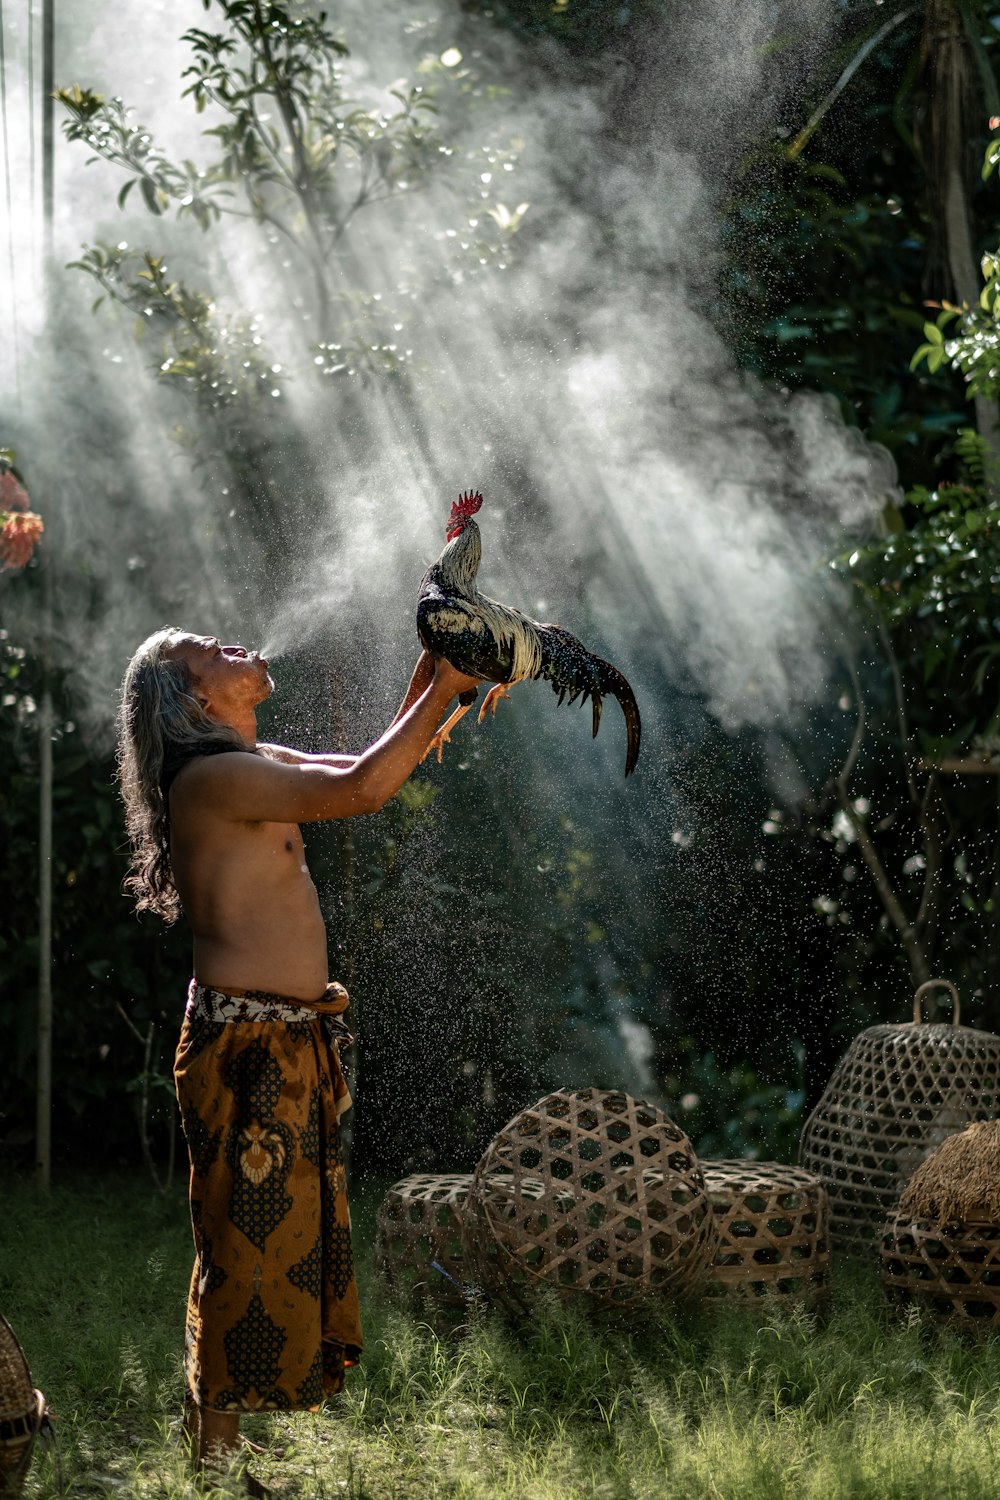 man raising rooster while blowing smoke during daytime